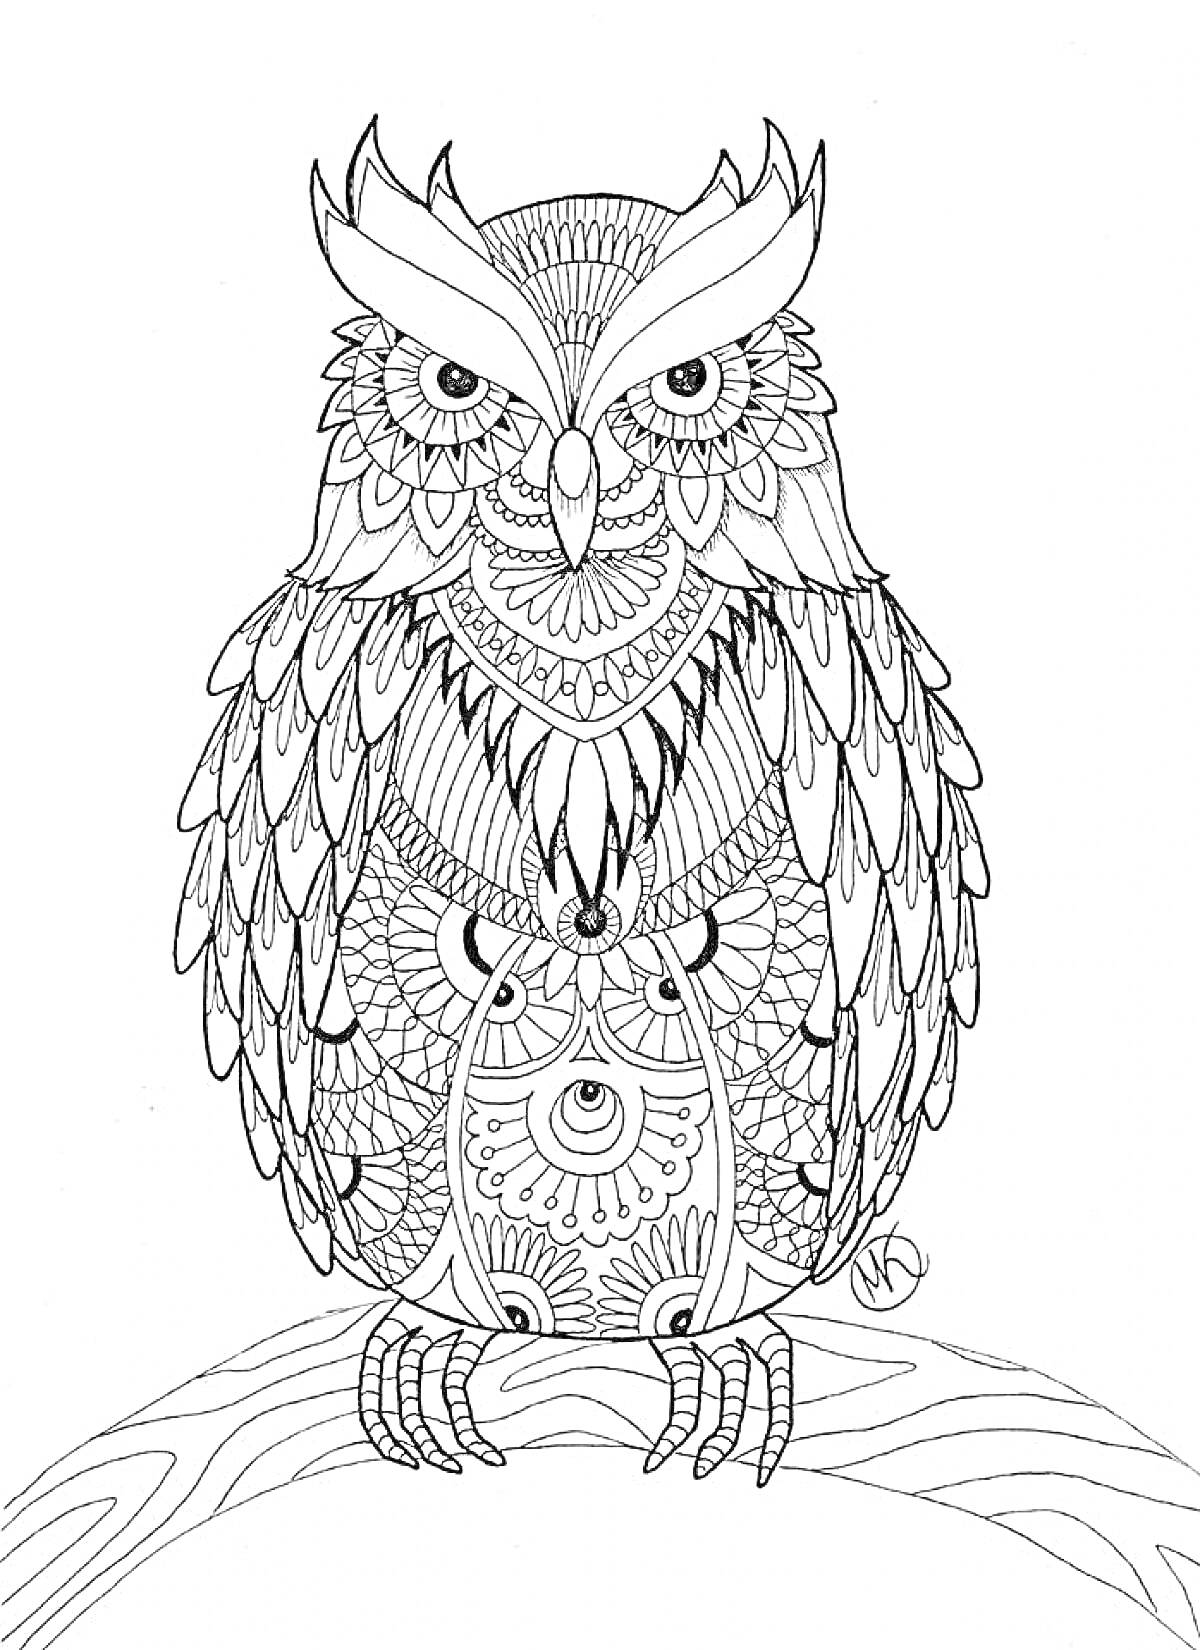 Раскраска Антистресс раскраска с изображением совы с детализированными узорами, сидящей на ветке